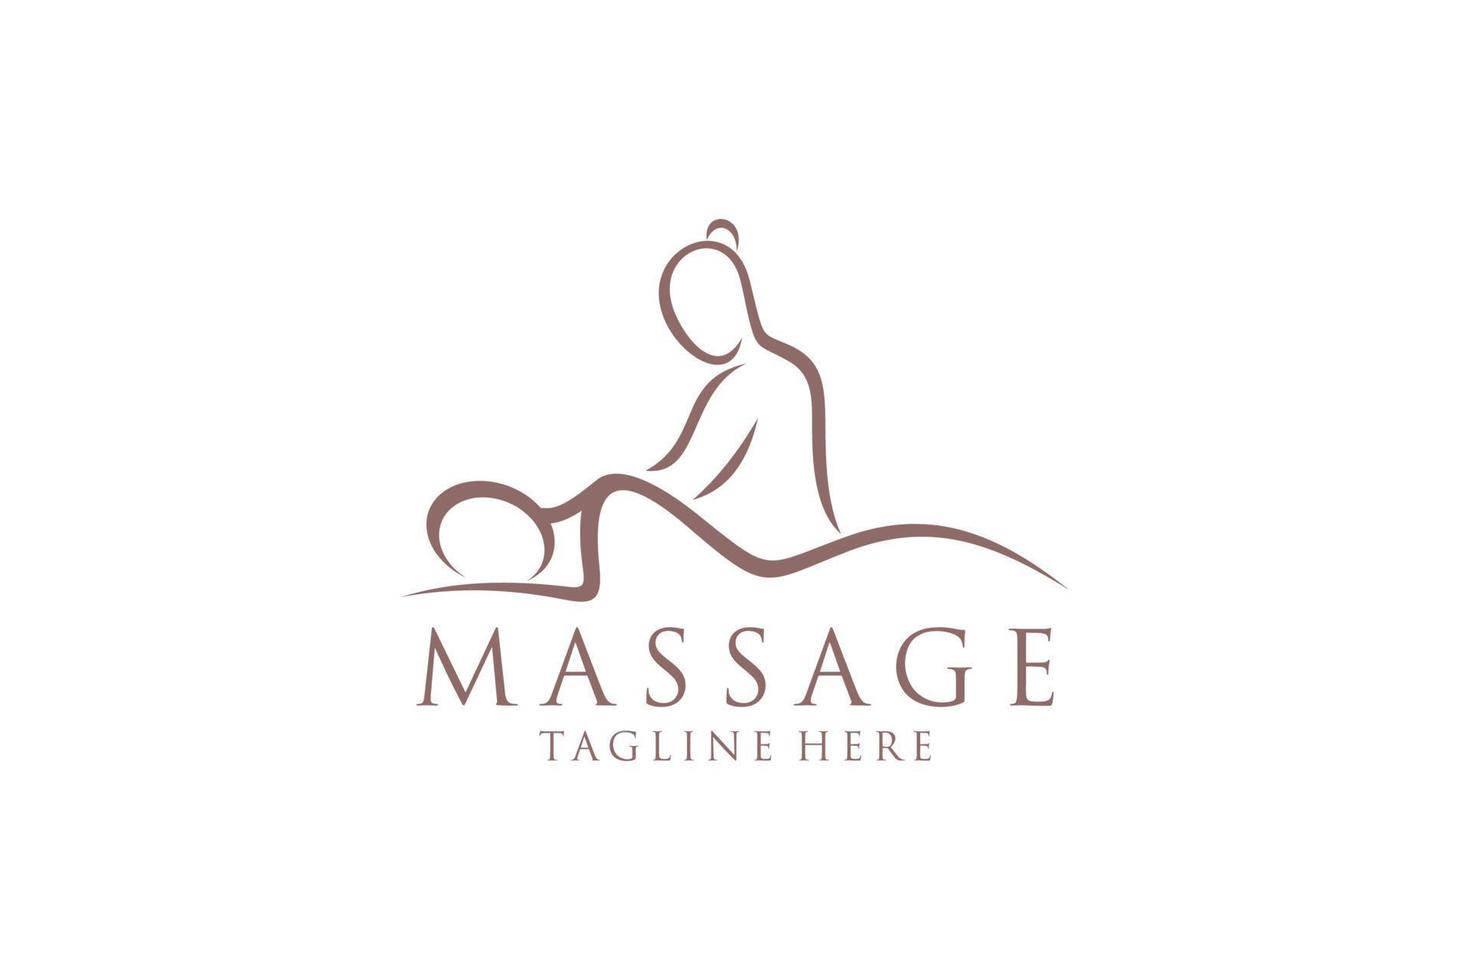 logotipo de masaje corporal, icono del centro de spa corporal, salón de masajes, spa, relax, rejenuvate, aceite esencial, fondo blanco, ilustración vectorial vector